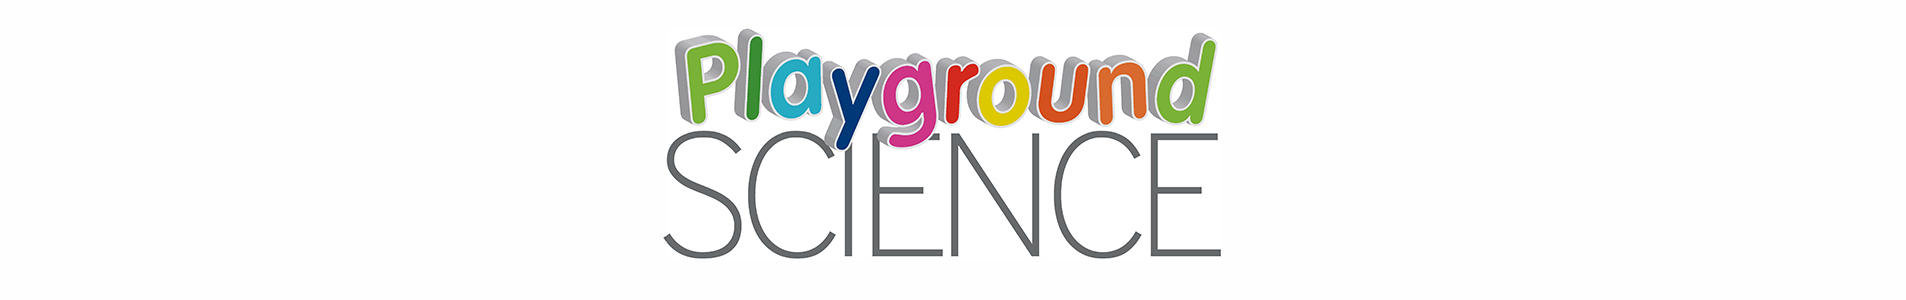 Playground science logo